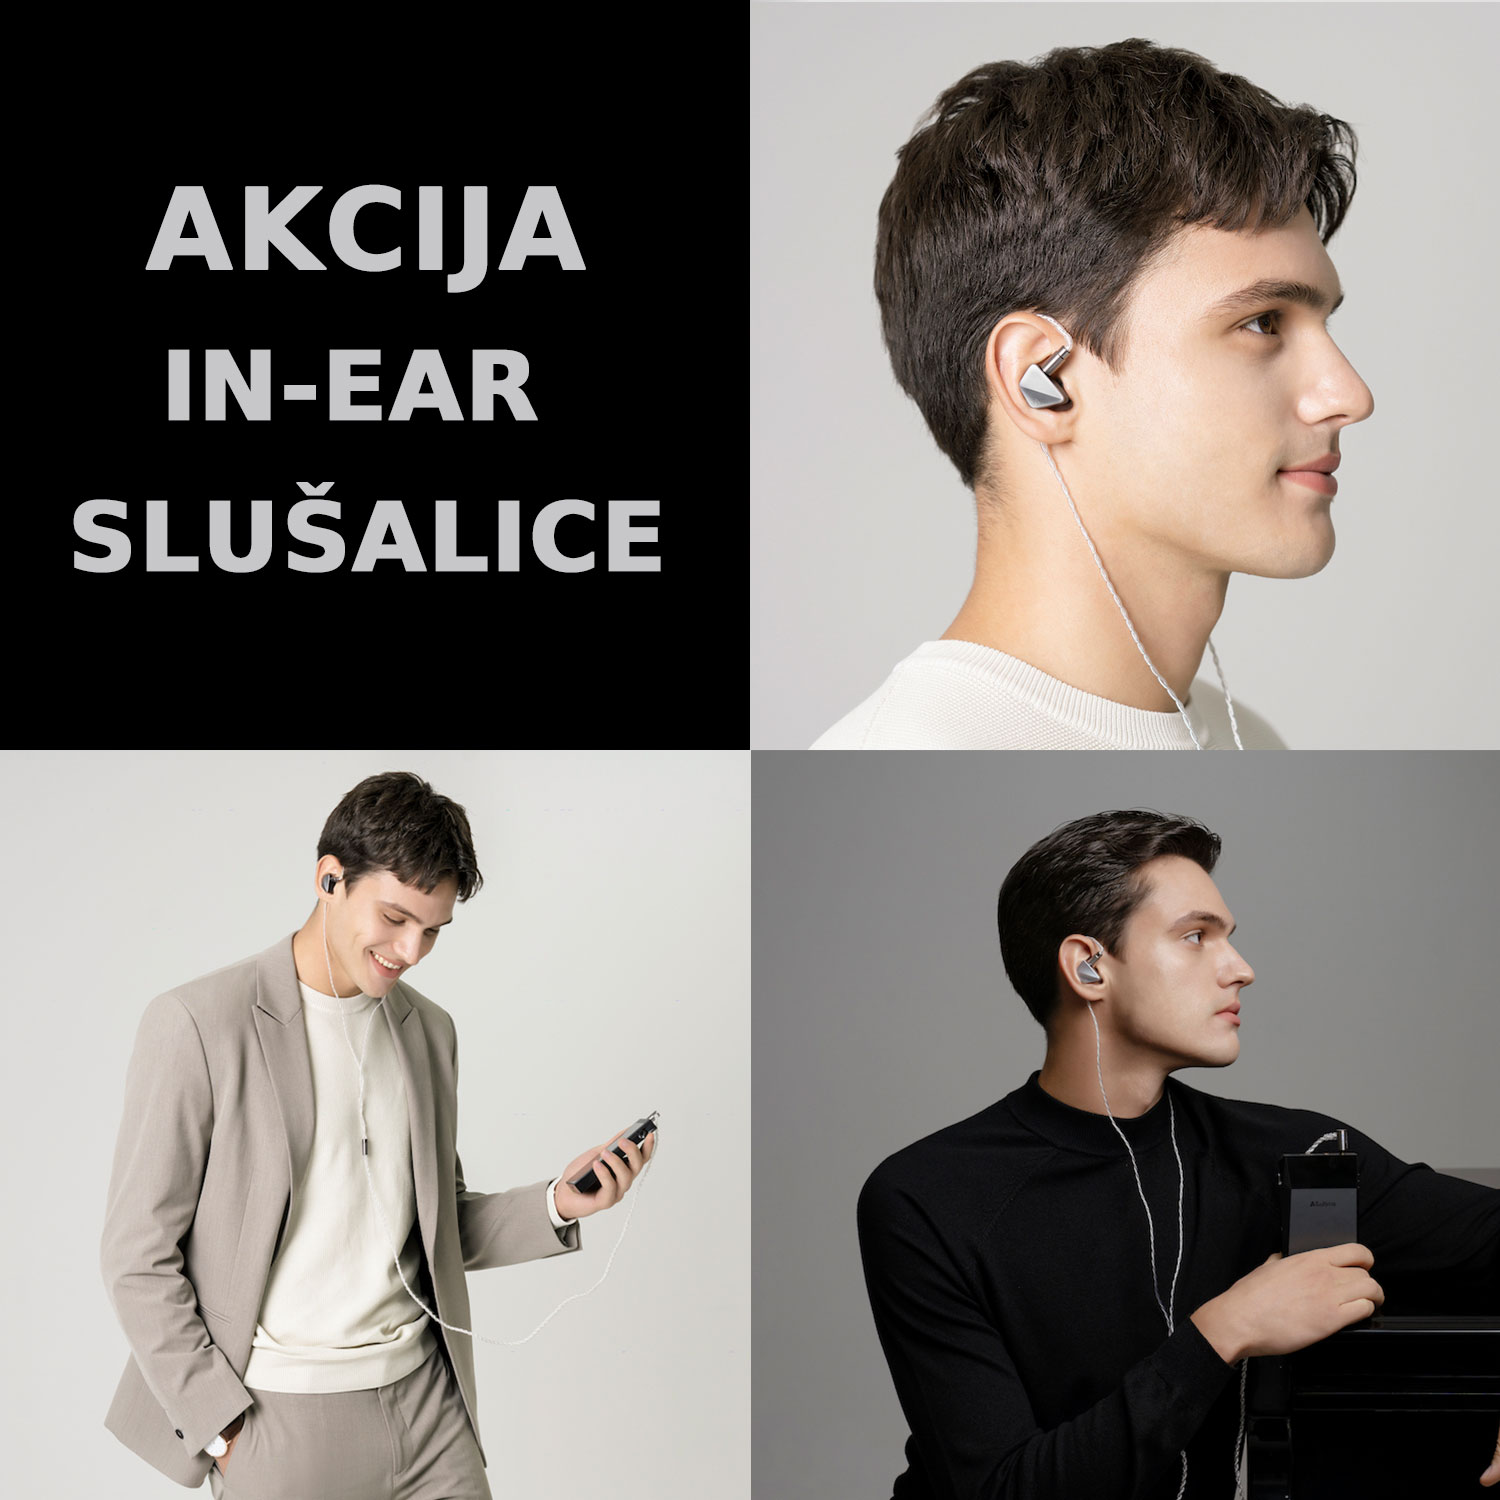 Akcija in-ear slušalice